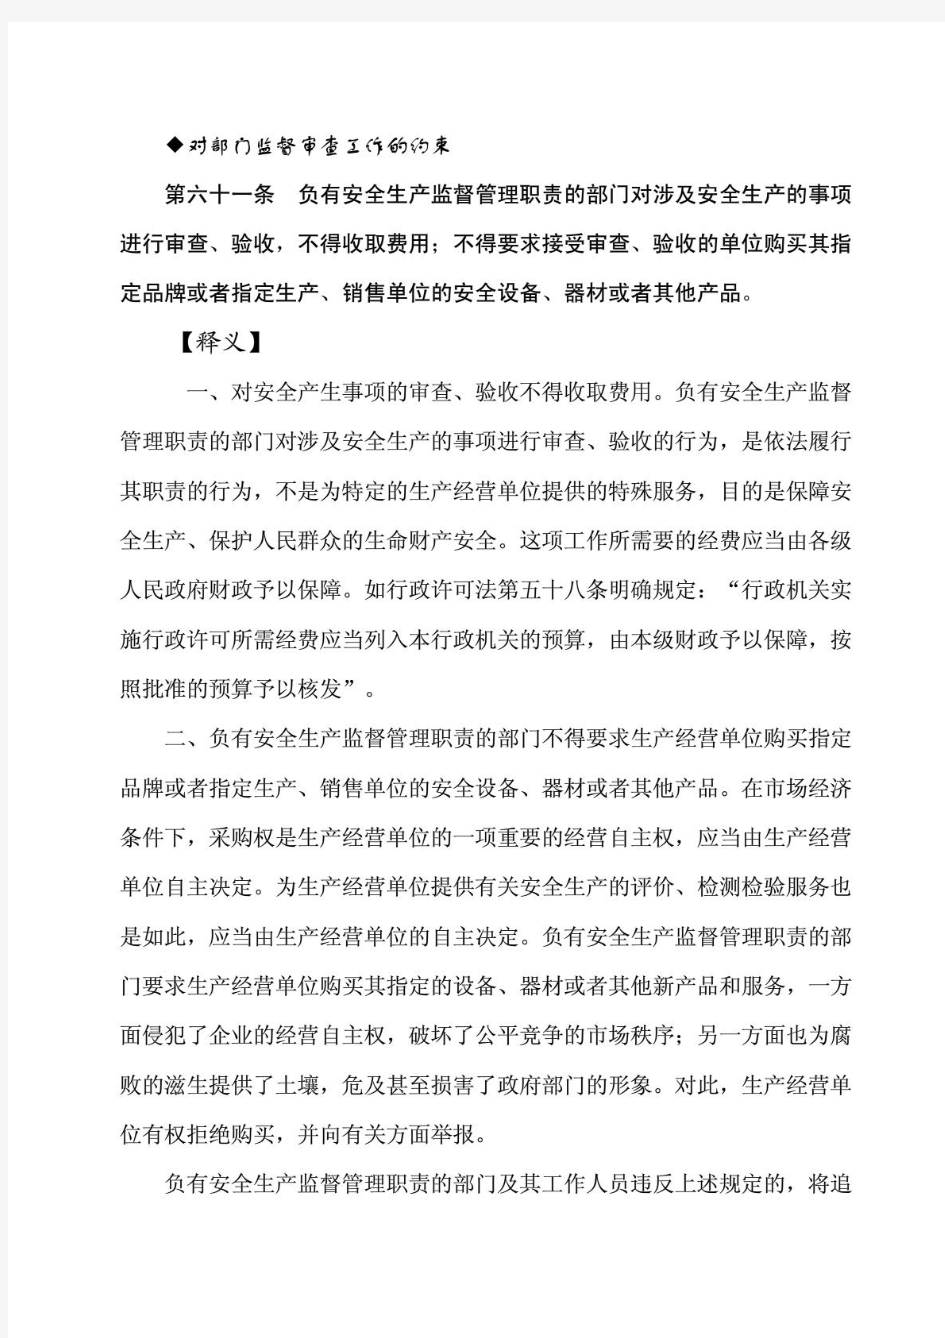 (新)中华人民共和国安全生产法释义(二十一)